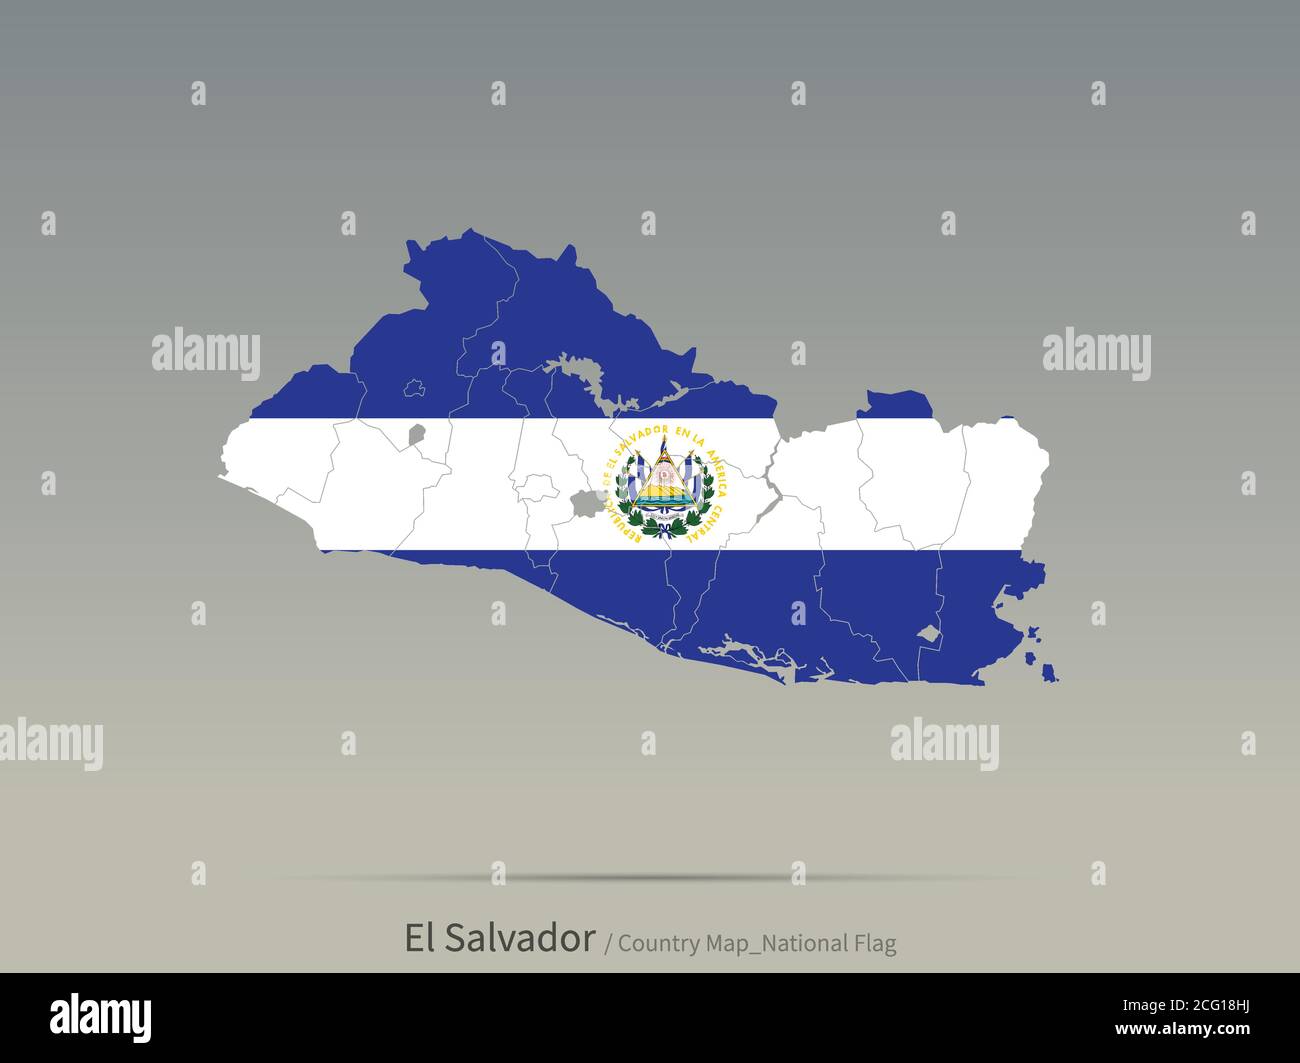 El Salvador Central America Map Flag Fotos E Im Genes De Stock Alamy